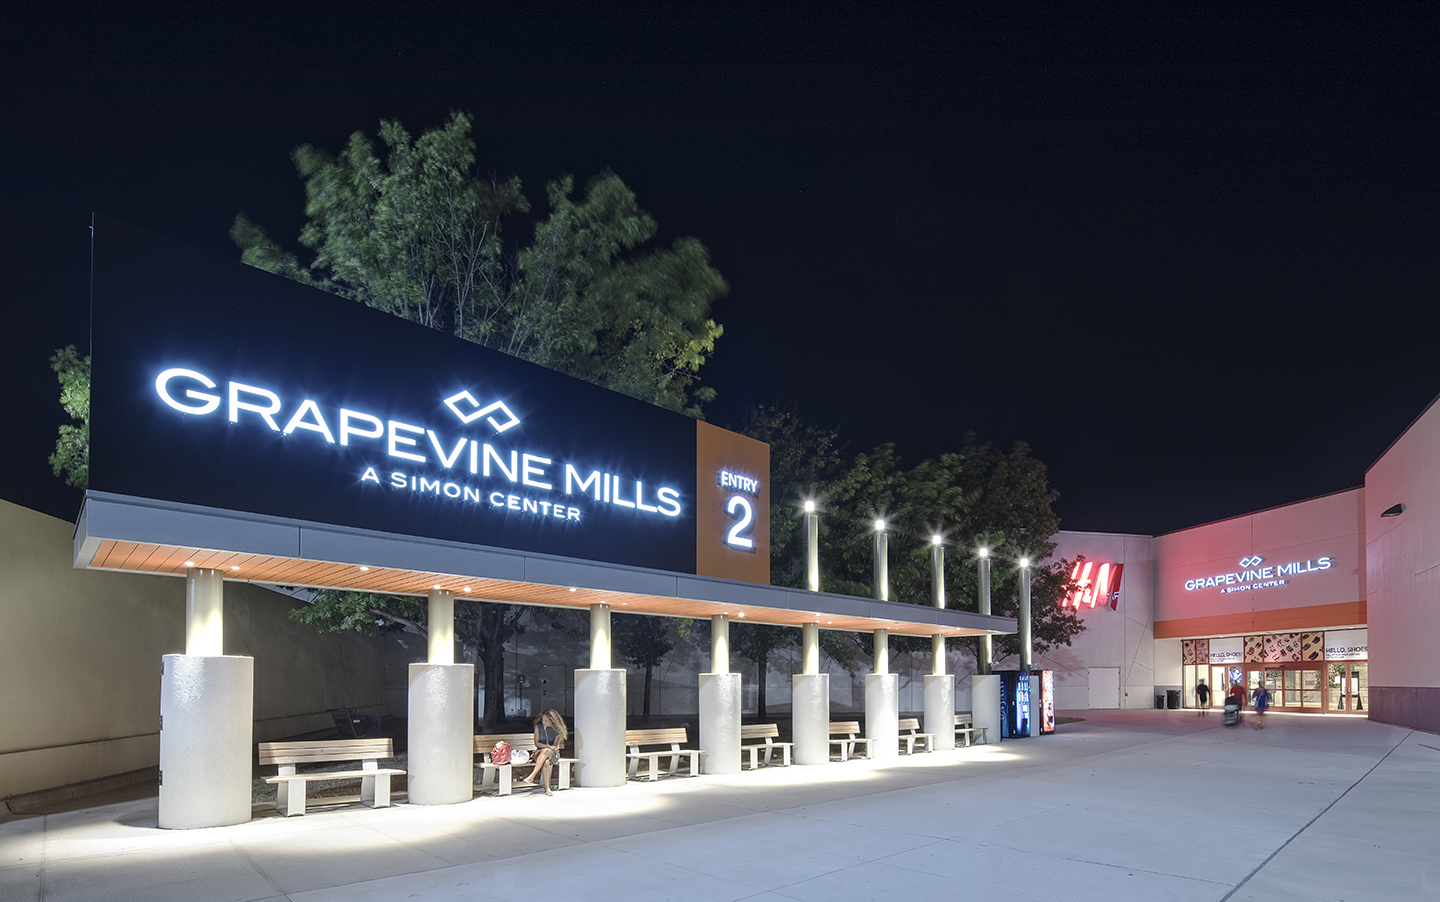 Dallas Cowboys Pro Shop - Grapevine Mills Mall - Grapevine Mills - 253  visitors